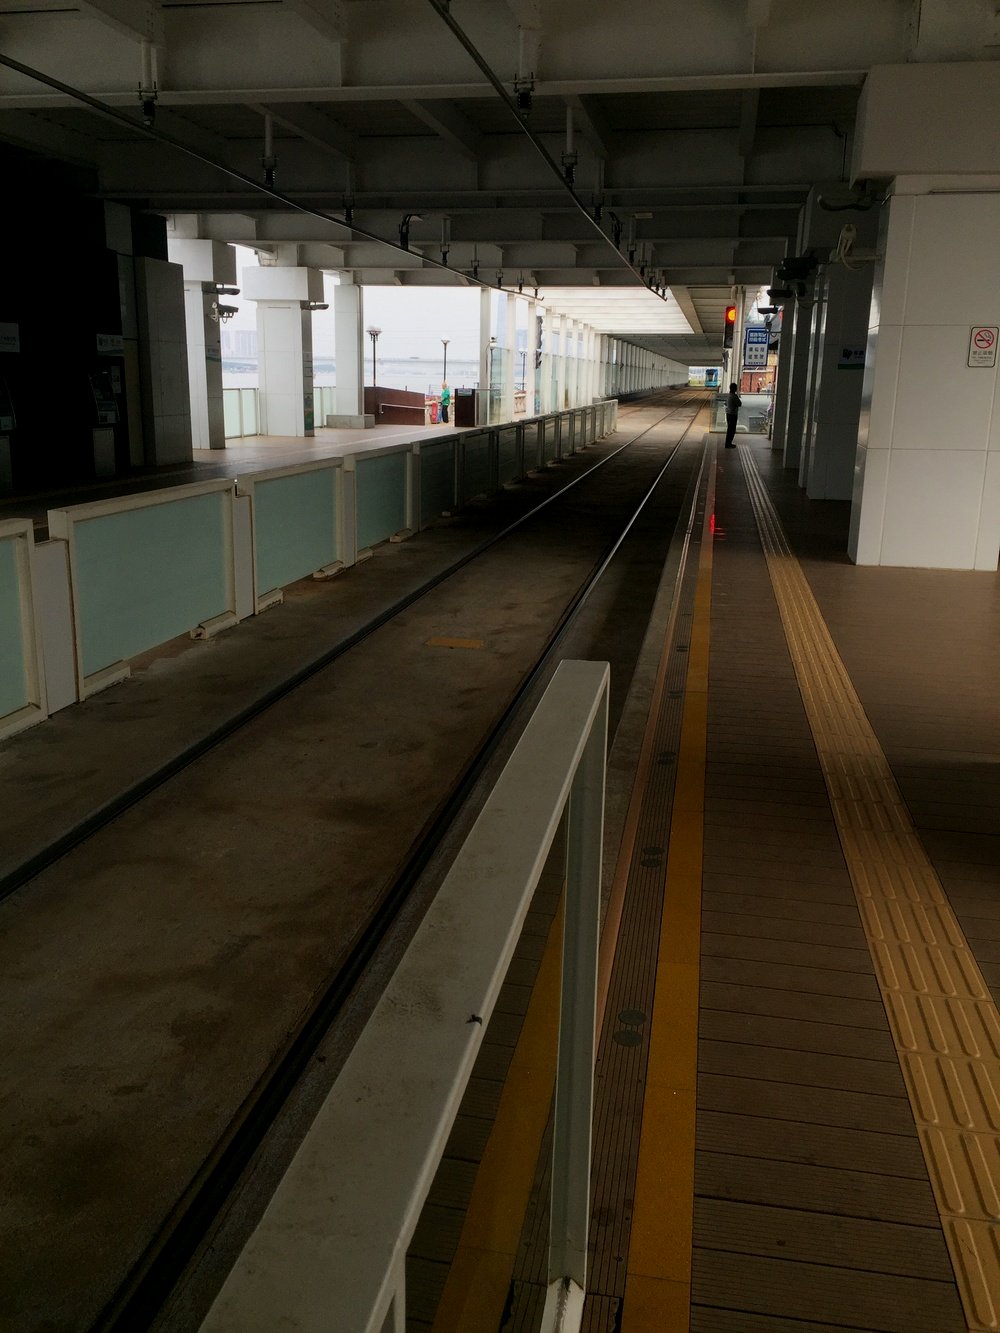 琶醍站站台，电车的站台都是开放式的。